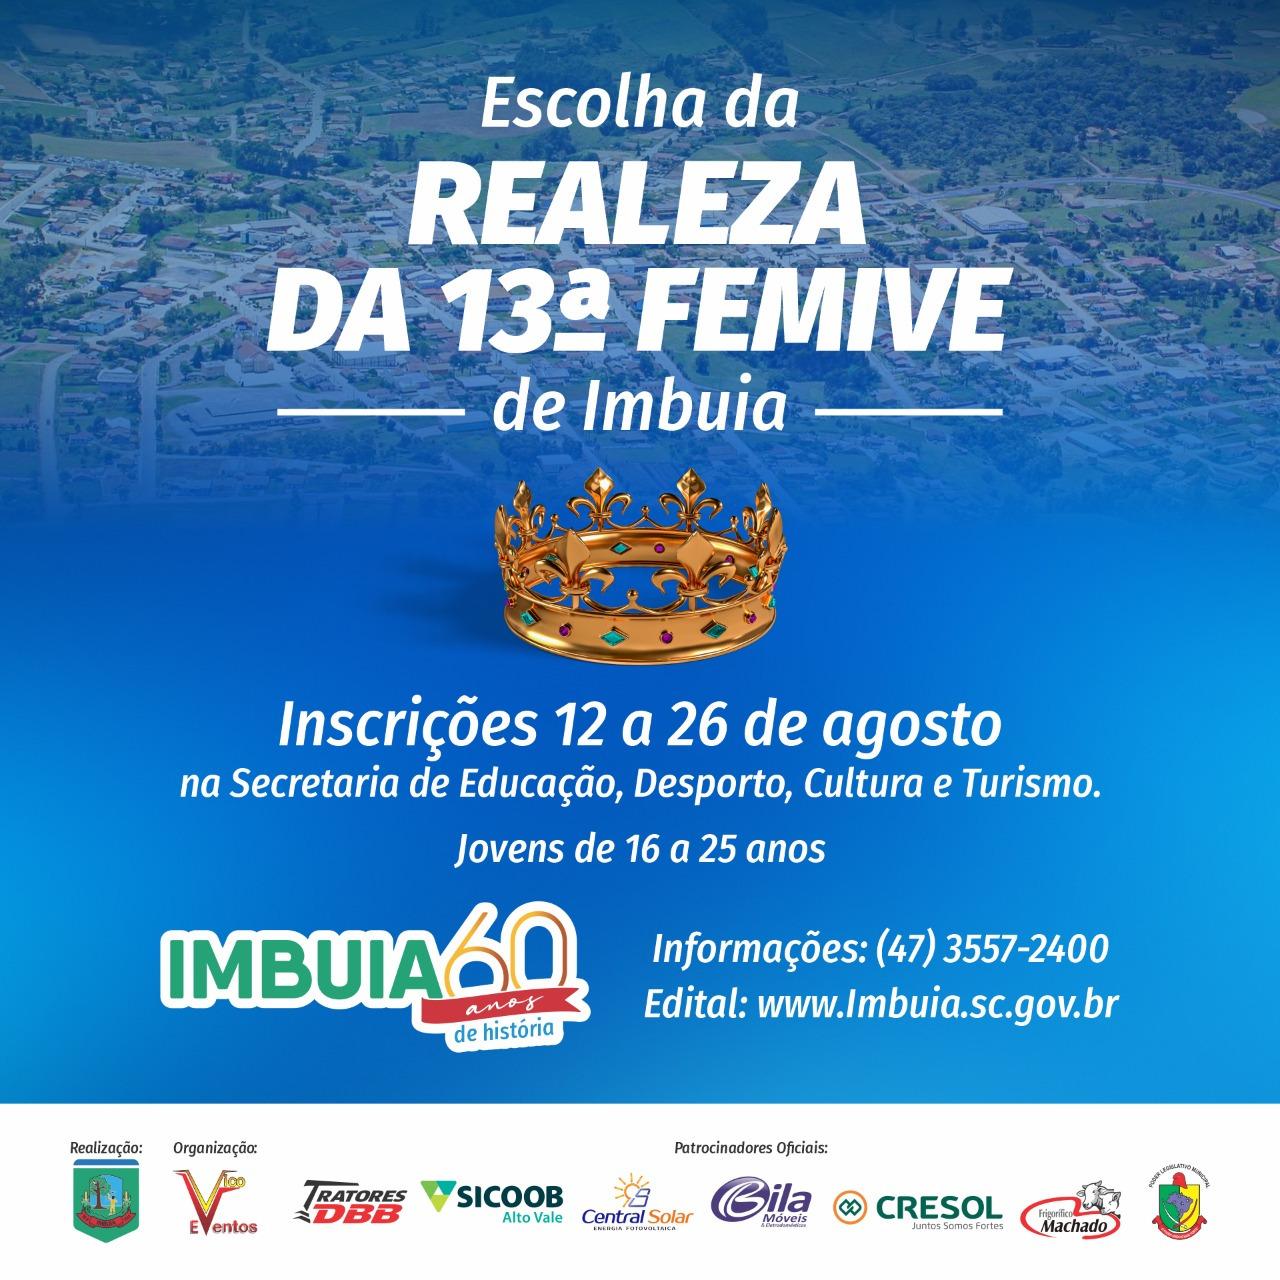 Encerram-se nesta sexta-feira (26) inscrições para candidatas a rainha da FEMIVE no município de Imbuia